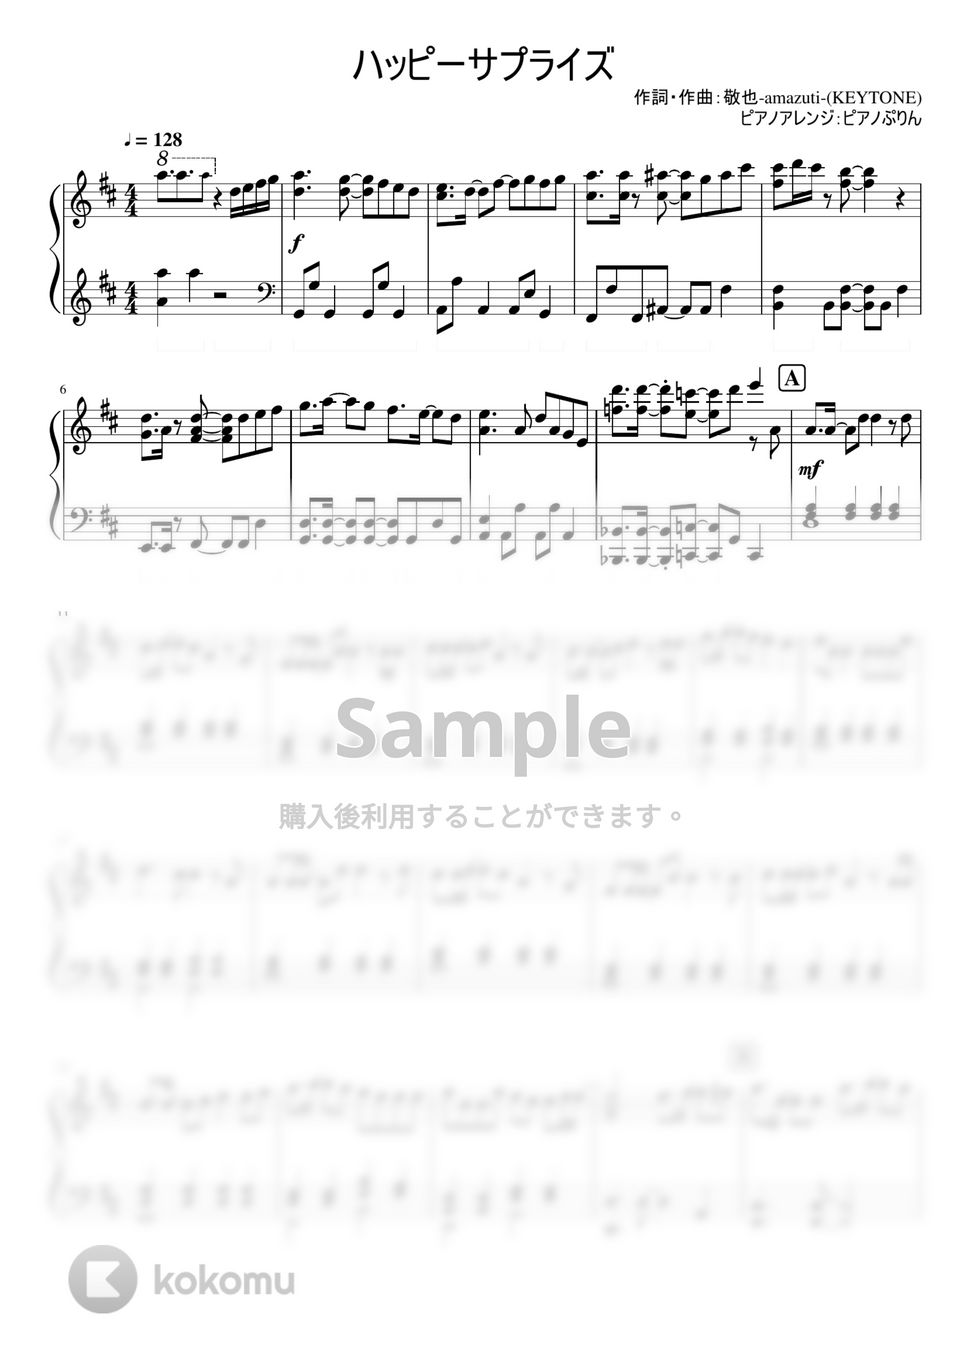 なにわ男子 - ハッピーサプライズ (なにわ男子/3rd single 「ハッピーサプライズ」) by ピアノぷりん